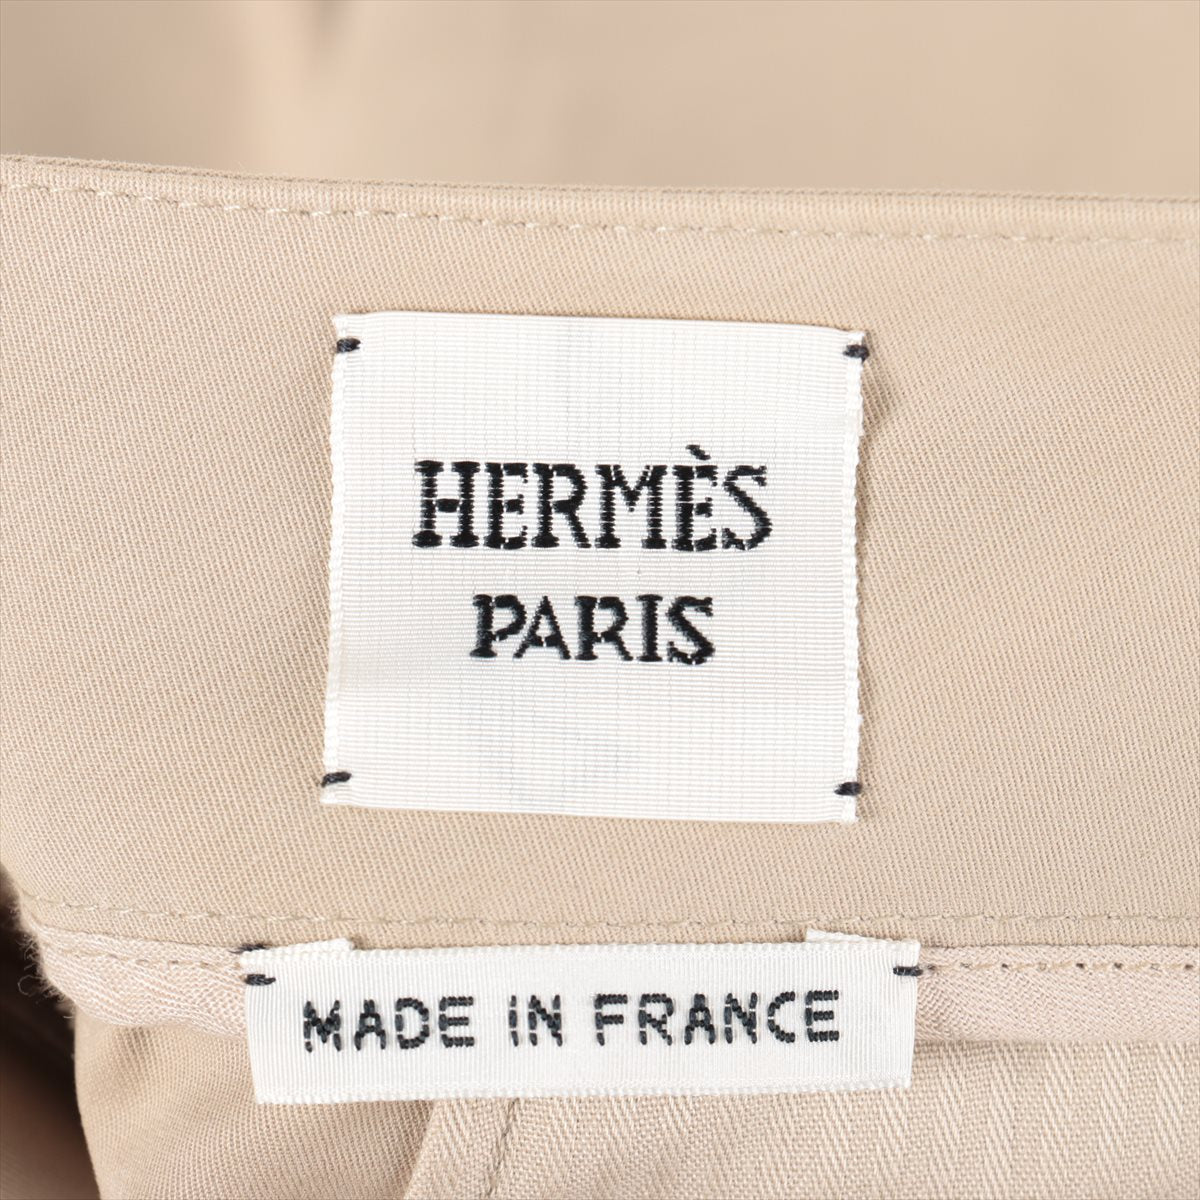 Hermès Cotton & polyurethane Pants 34 Ladies' Beige  16-7403 Wide pants